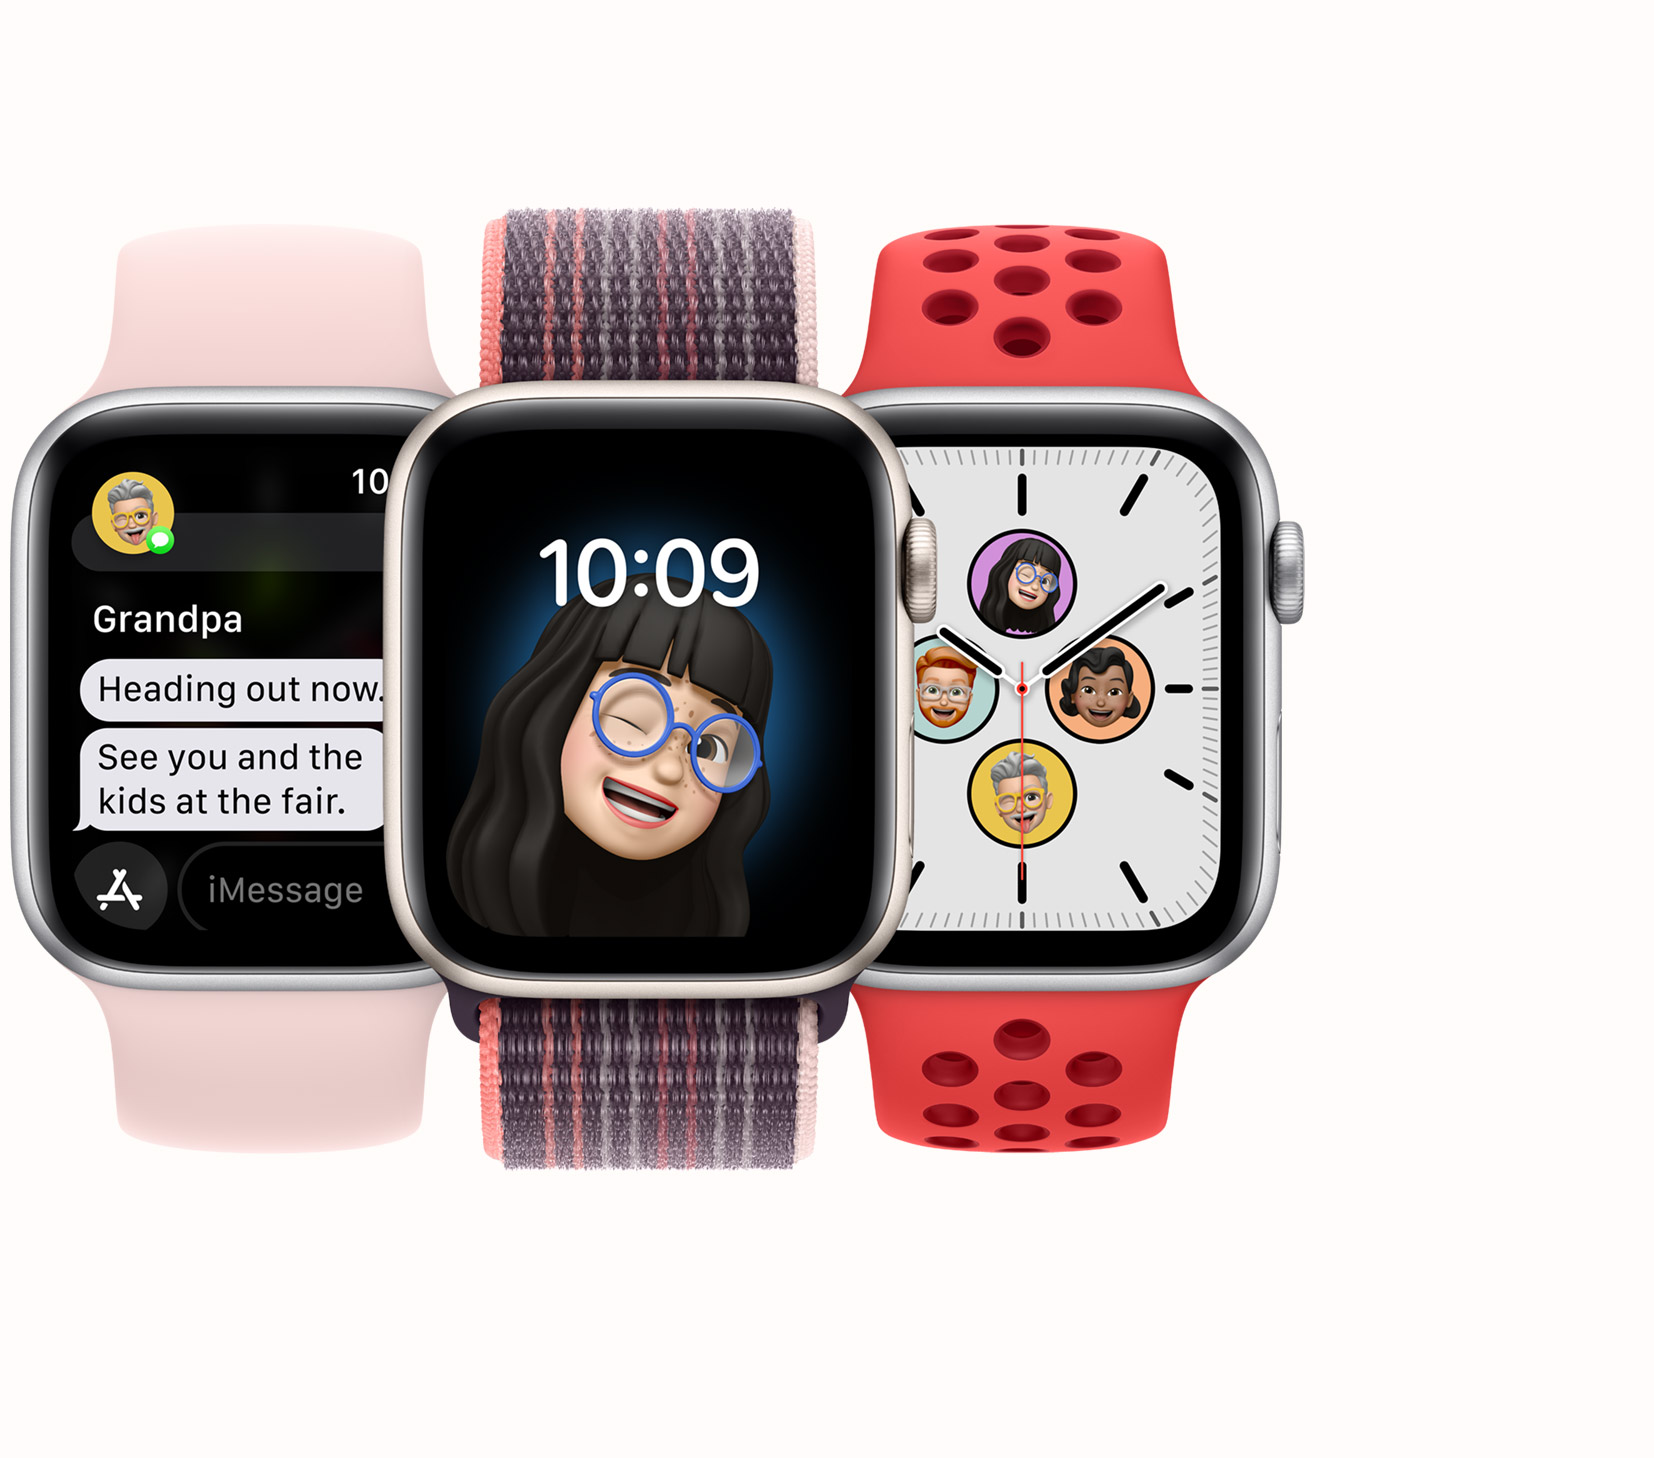 Apple giới thiệu loạt đồng hồ thông minh Apple Watch mới